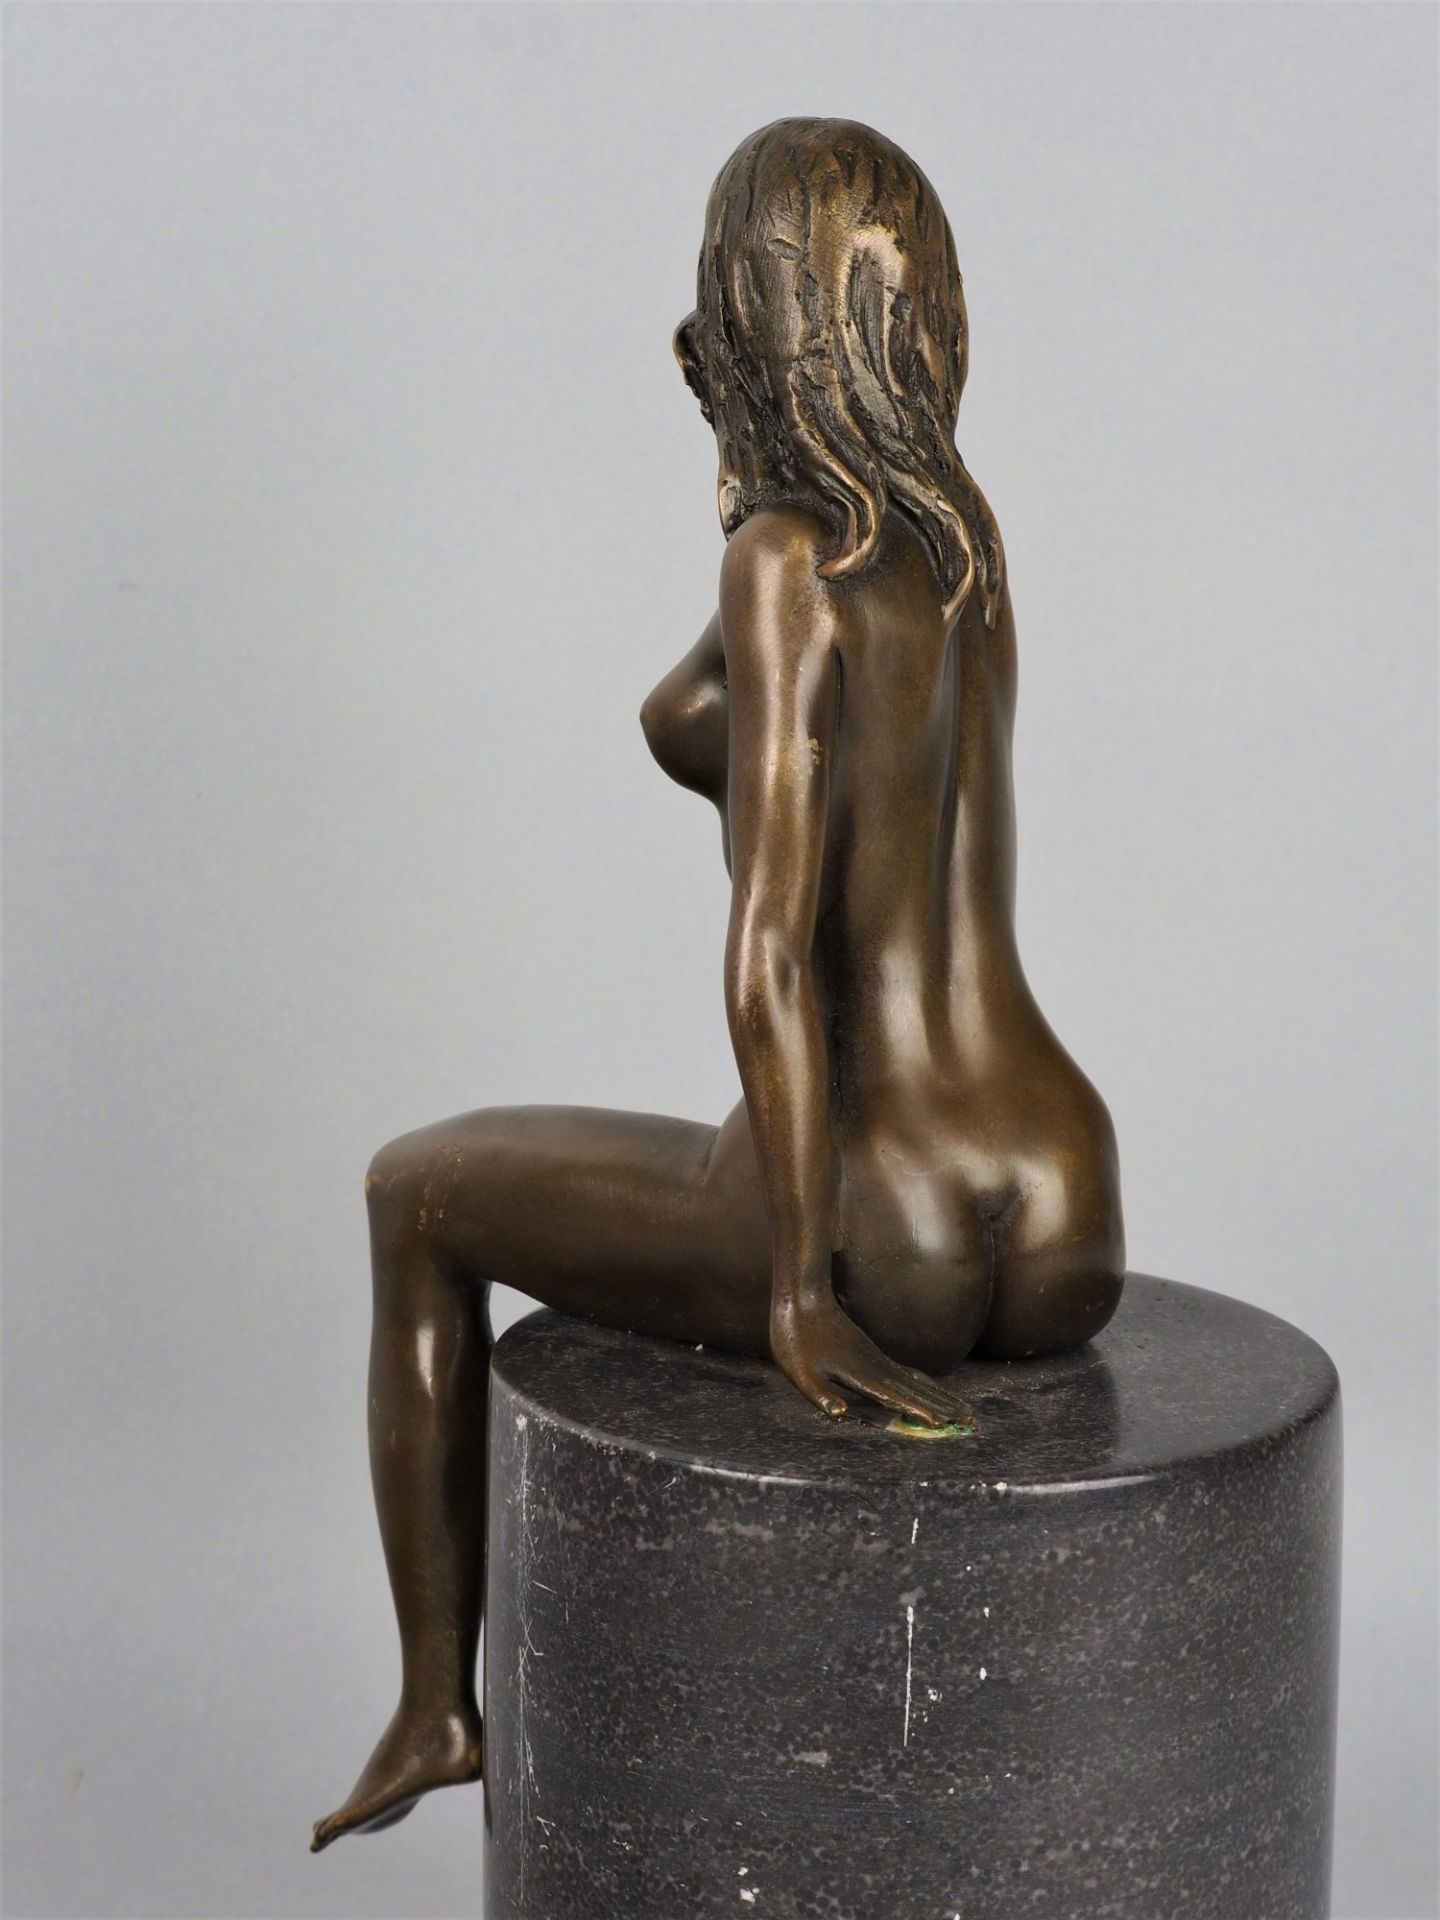 Bronzeskulptur weiblicher Akt "Claude",  evtl. J. B Deposse, Paris, 20. Jh.  - Bild 2 aus 4